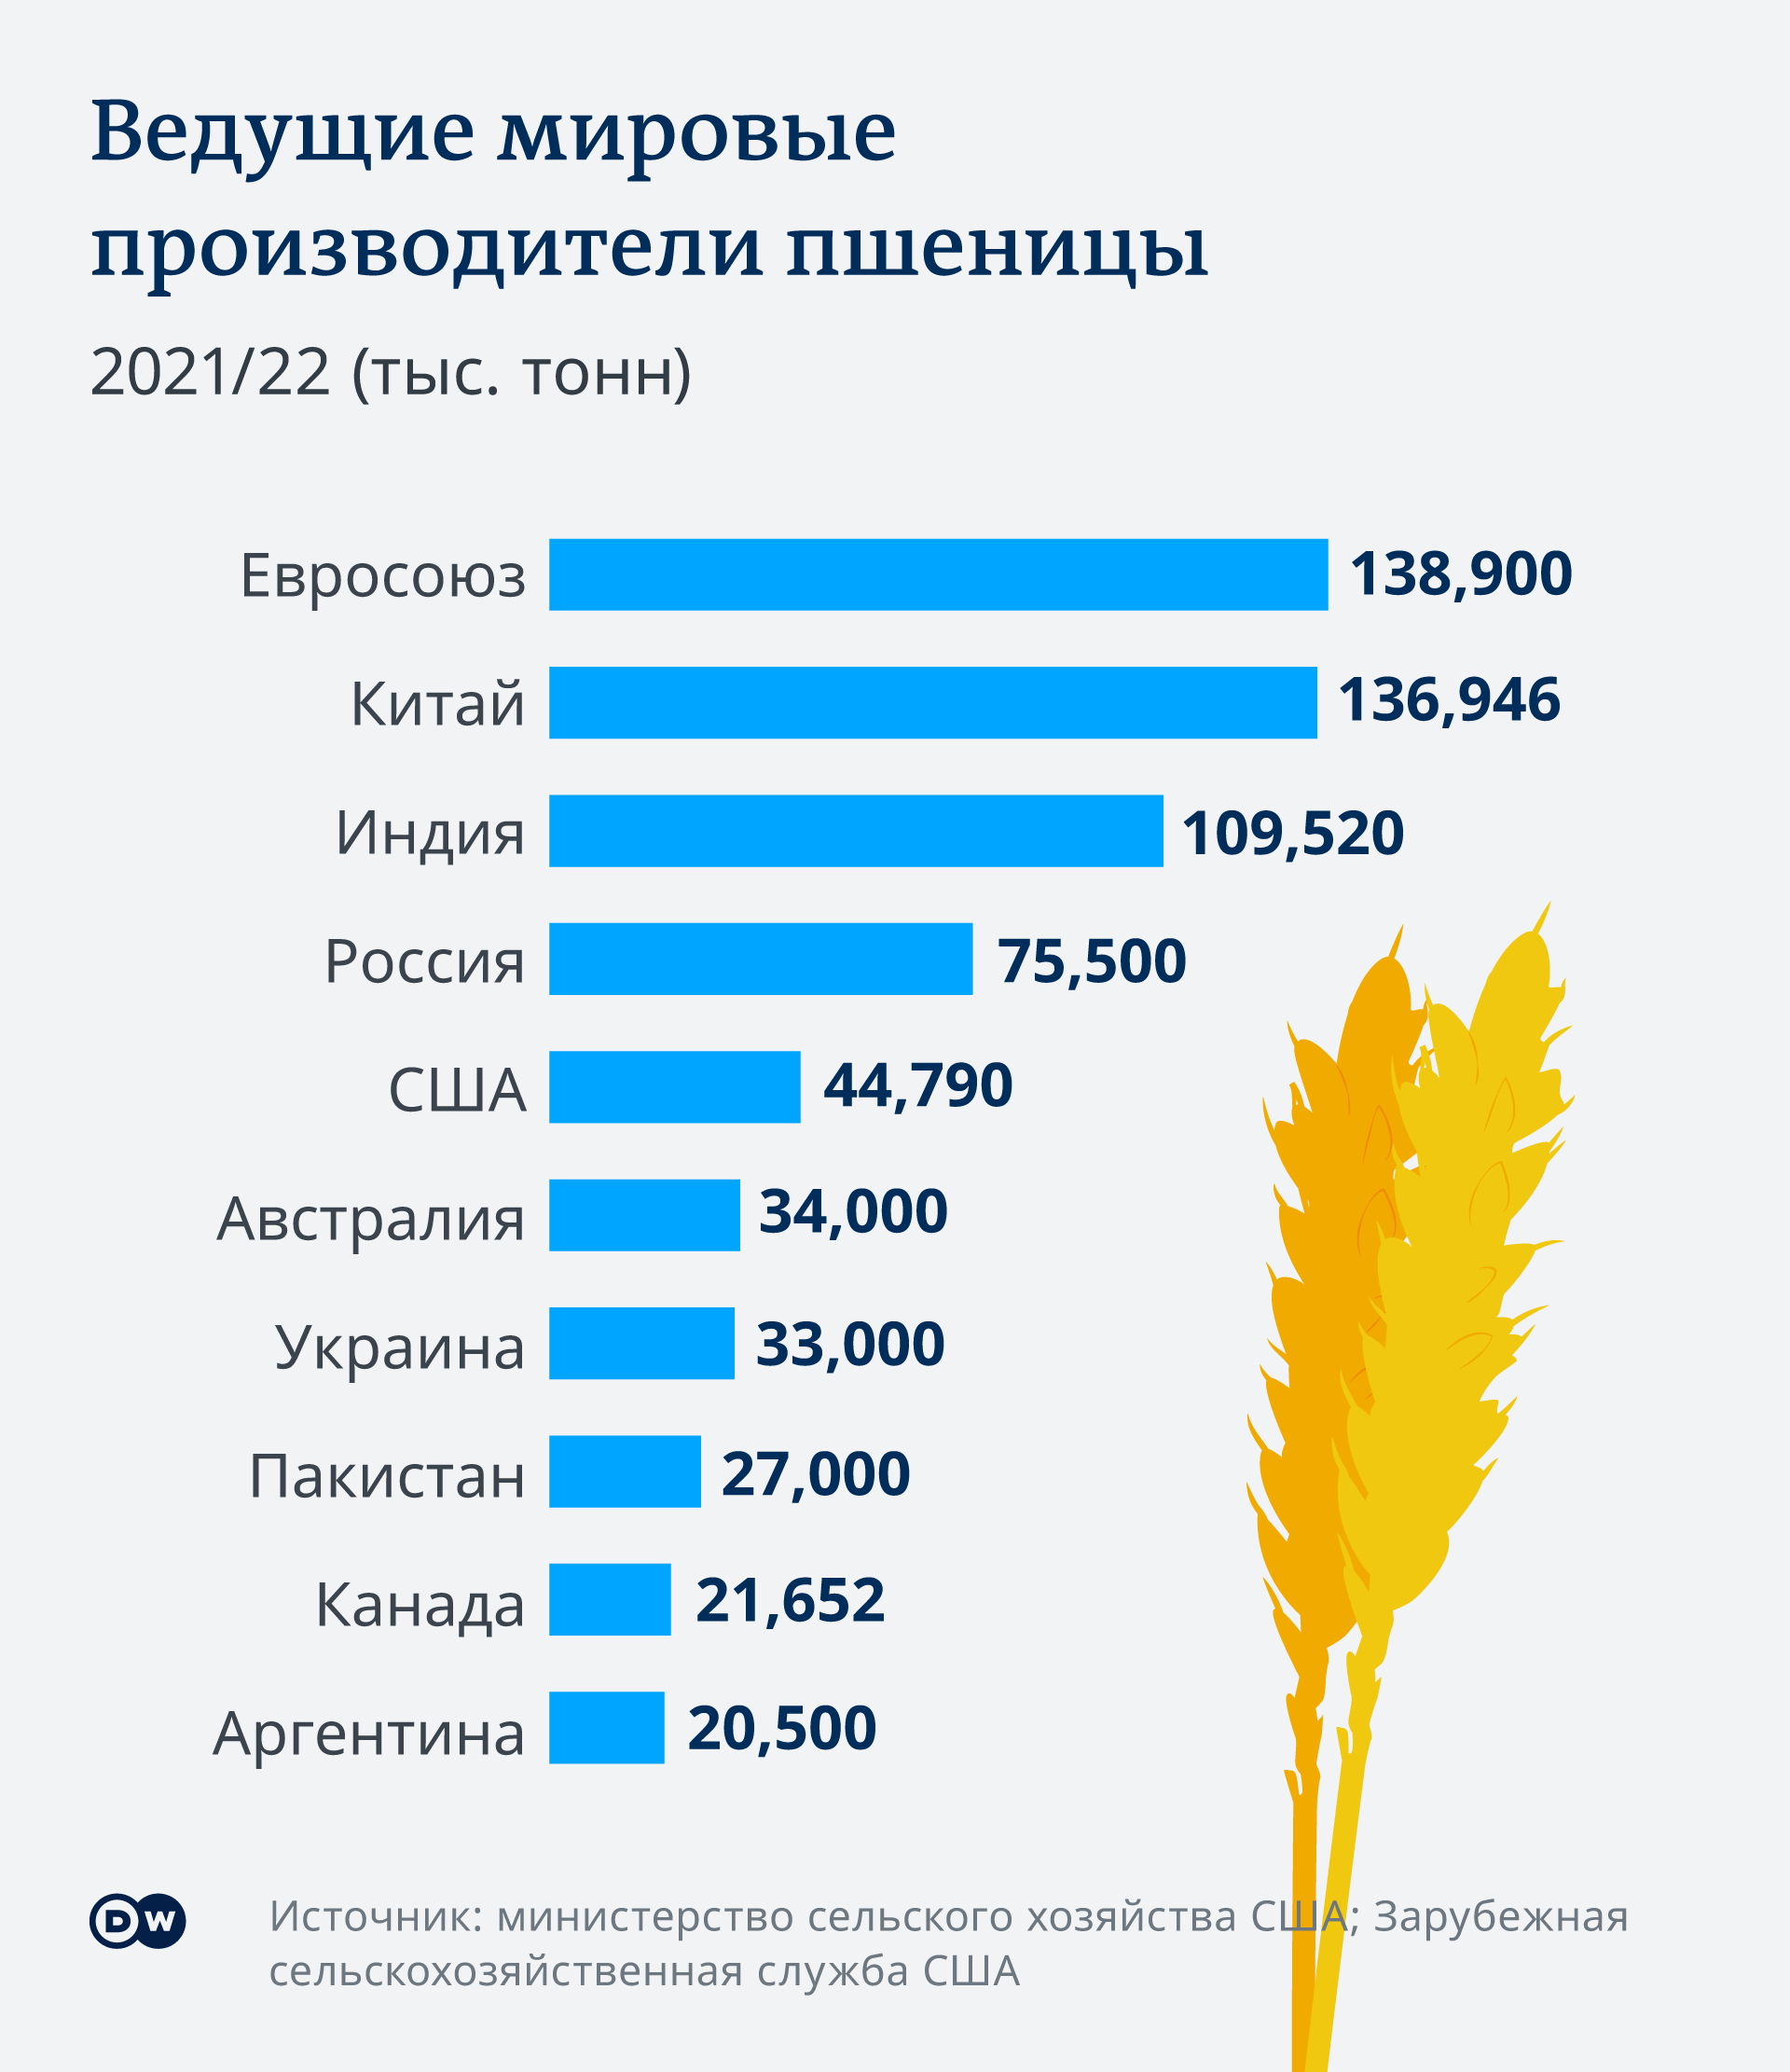 Инфографика: ведущие производители пшеницы